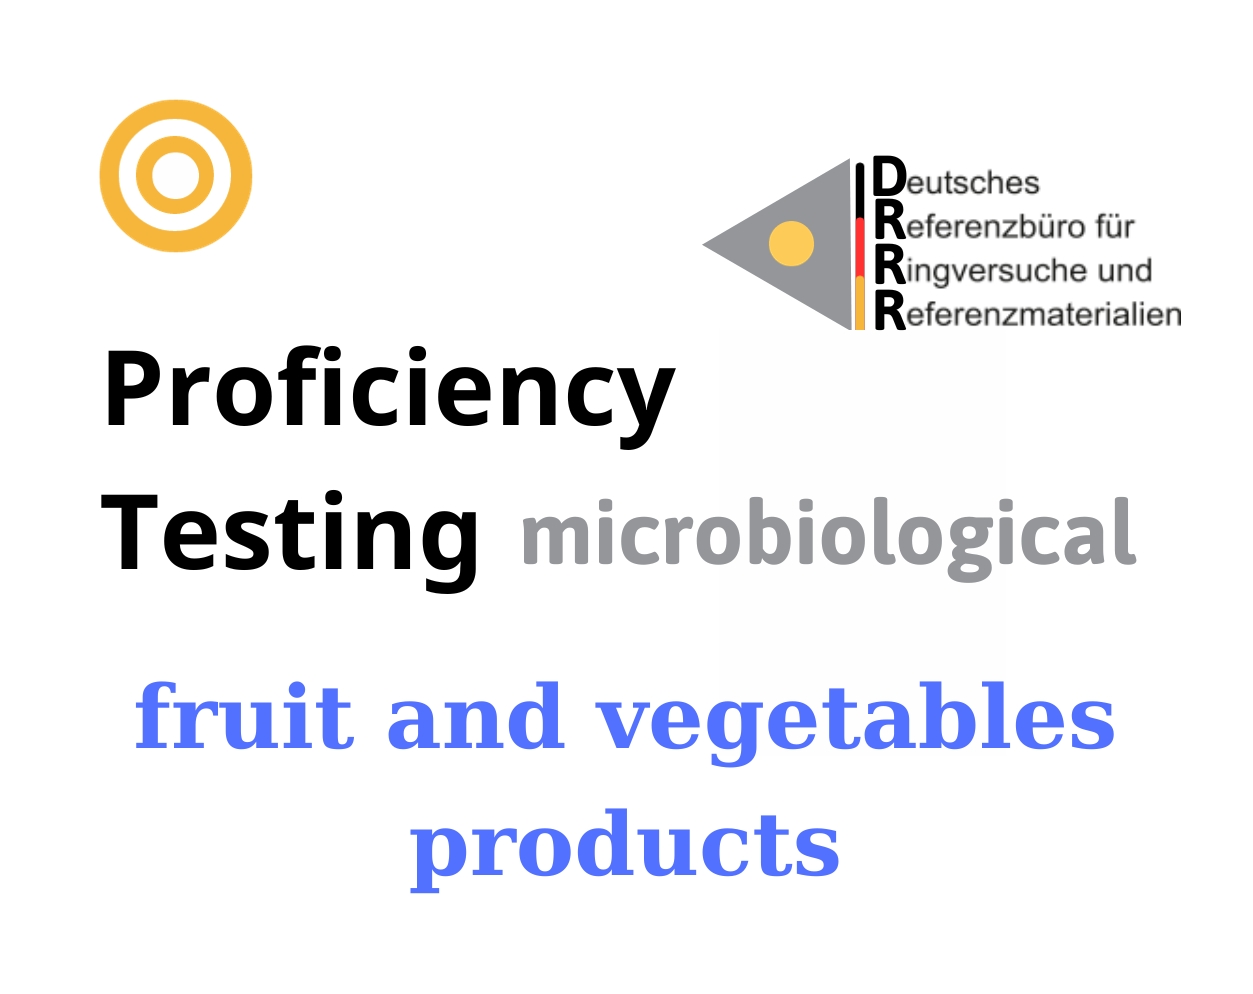 Thử nghiệm thành thạo (ISO 17043) vi sinh trên nền mẫu sản phẩm rau quả (fruit and vegetables products) Hãng DRRR, Đức